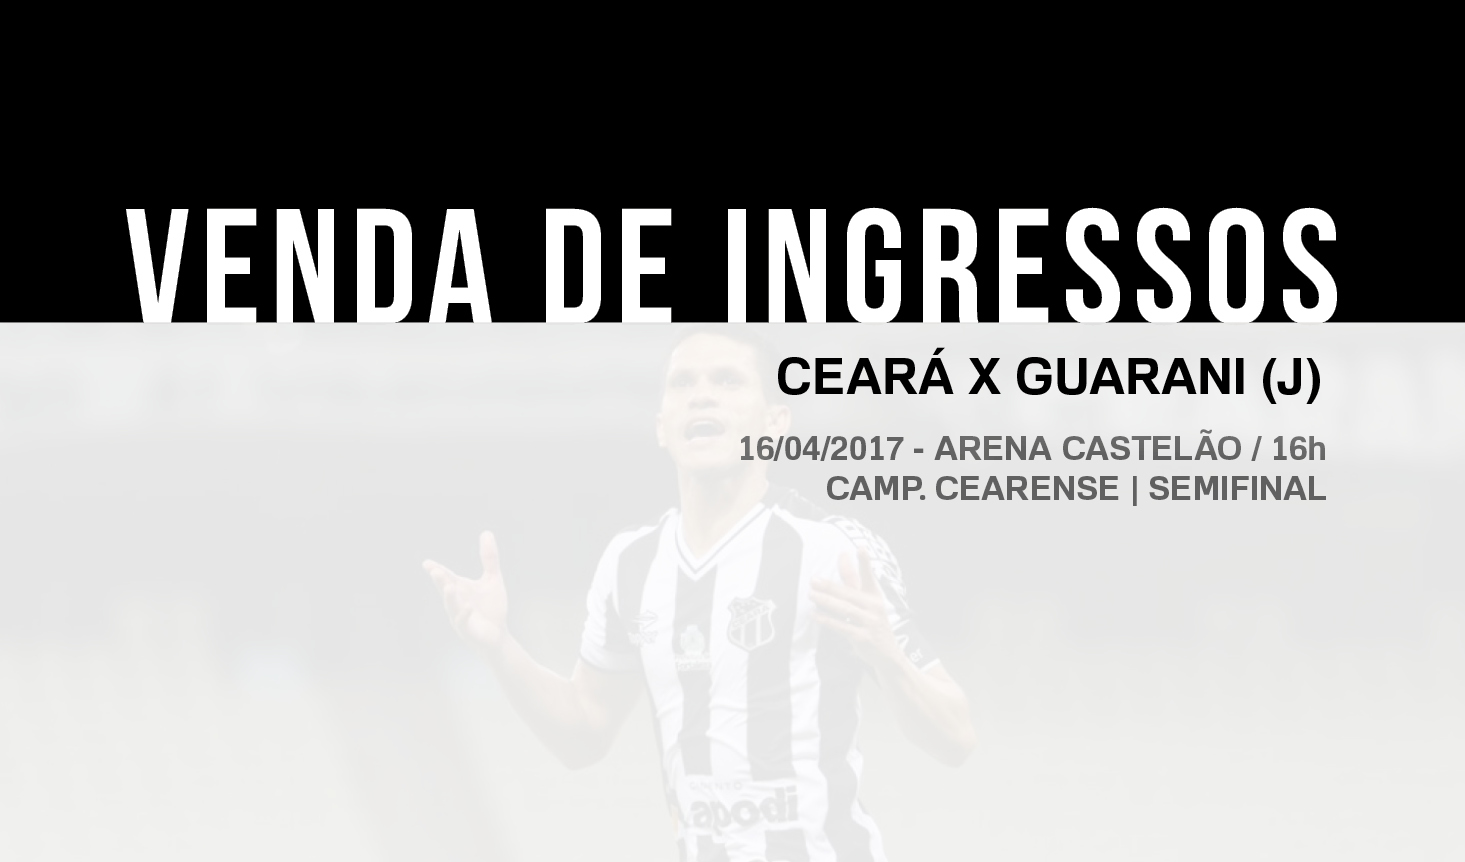 Ceará x Guarani (J): confira informações sobre a venda de ingressos